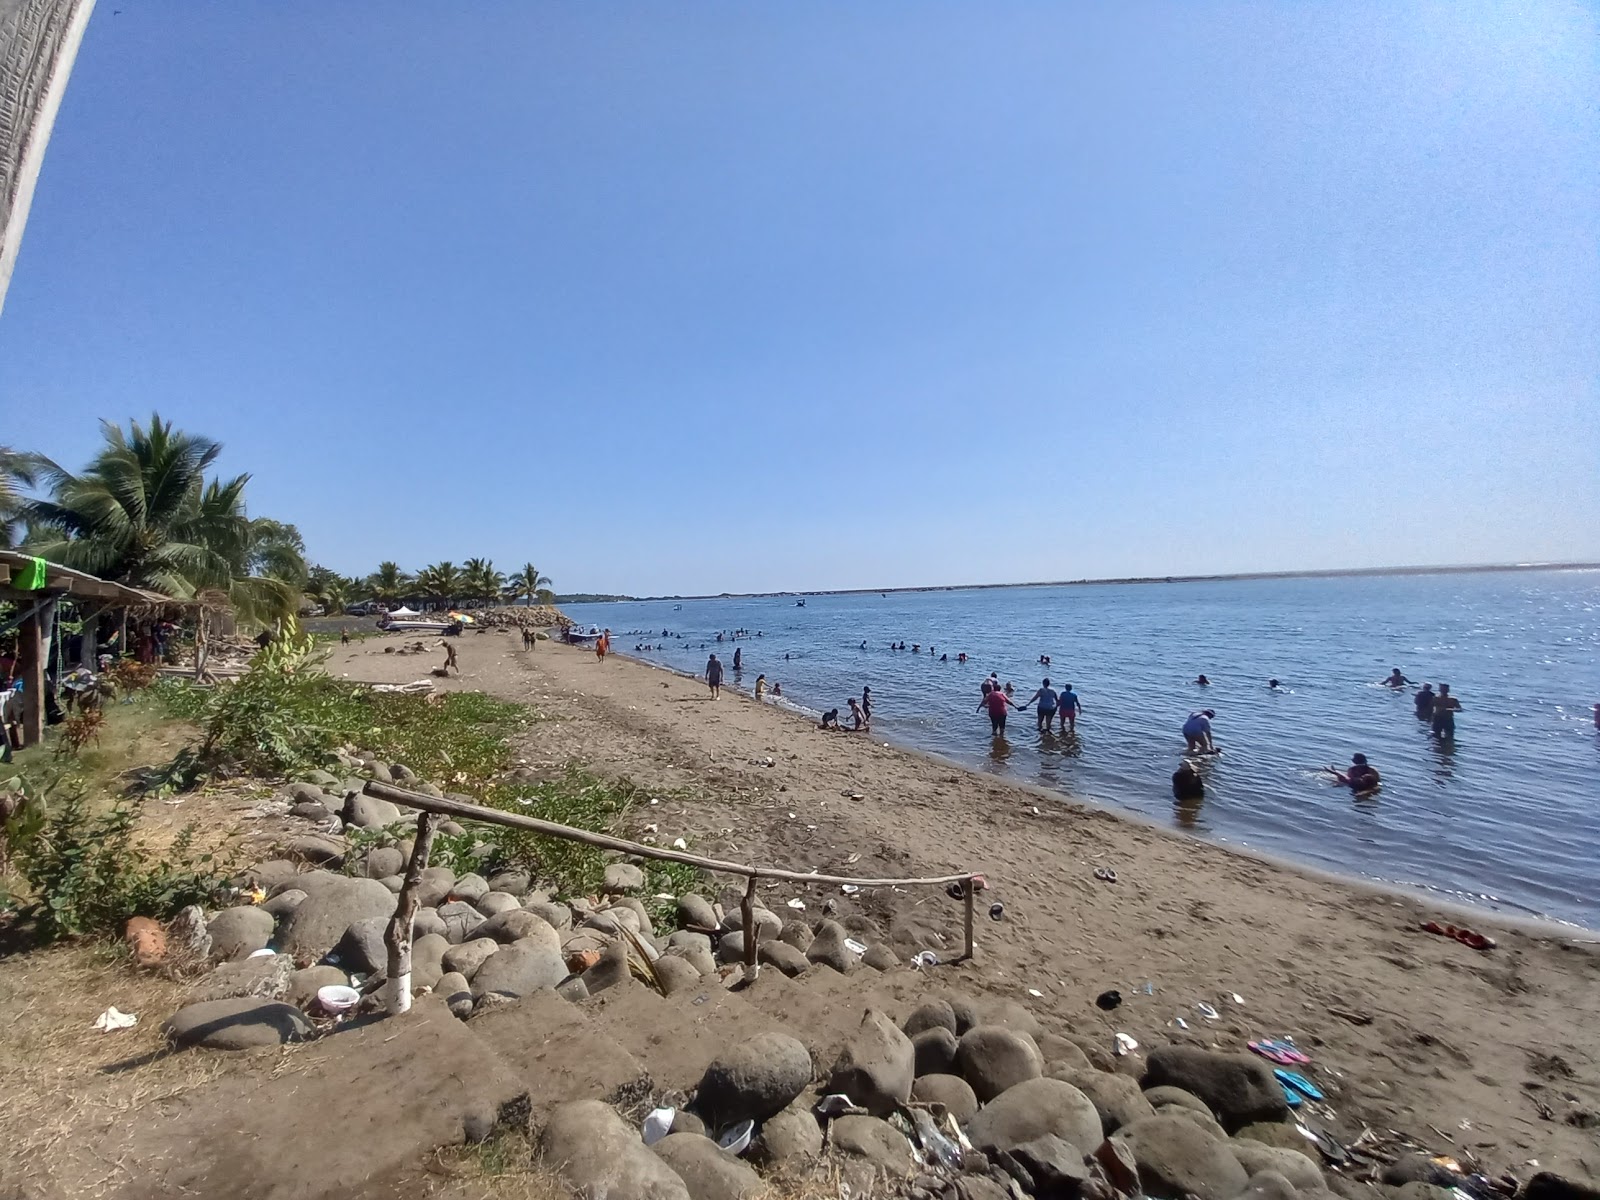 Photo de Garita Palmera beach - endroit populaire parmi les connaisseurs de la détente